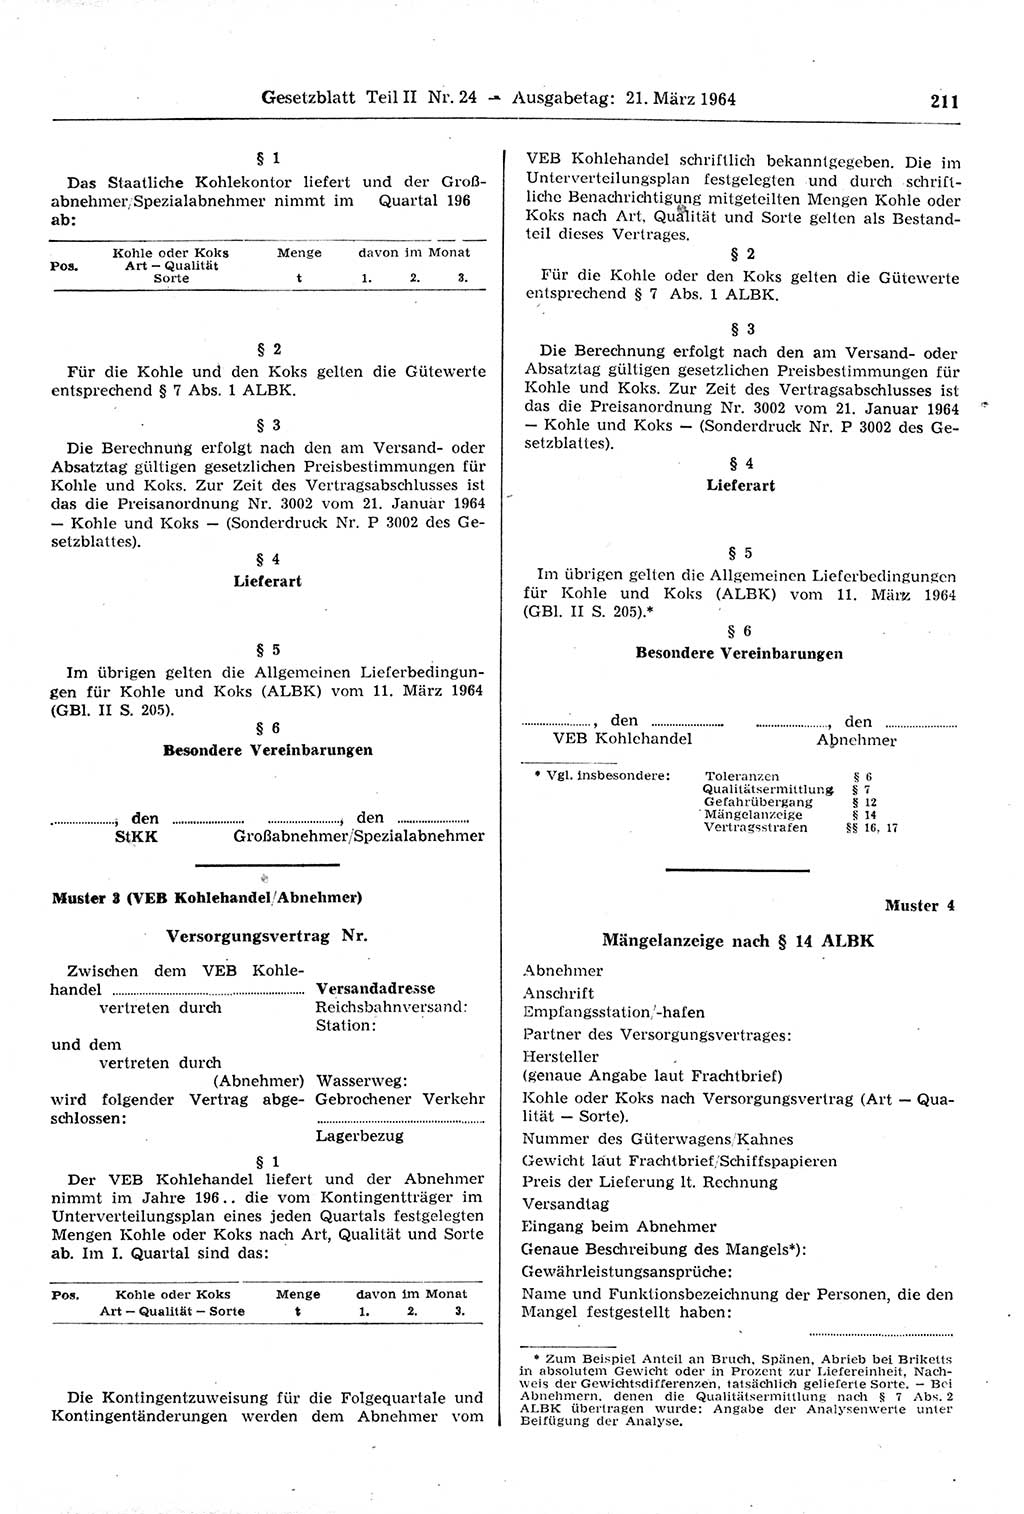 Gesetzblatt (GBl.) der Deutschen Demokratischen Republik (DDR) Teil ⅠⅠ 1964, Seite 211 (GBl. DDR ⅠⅠ 1964, S. 211)